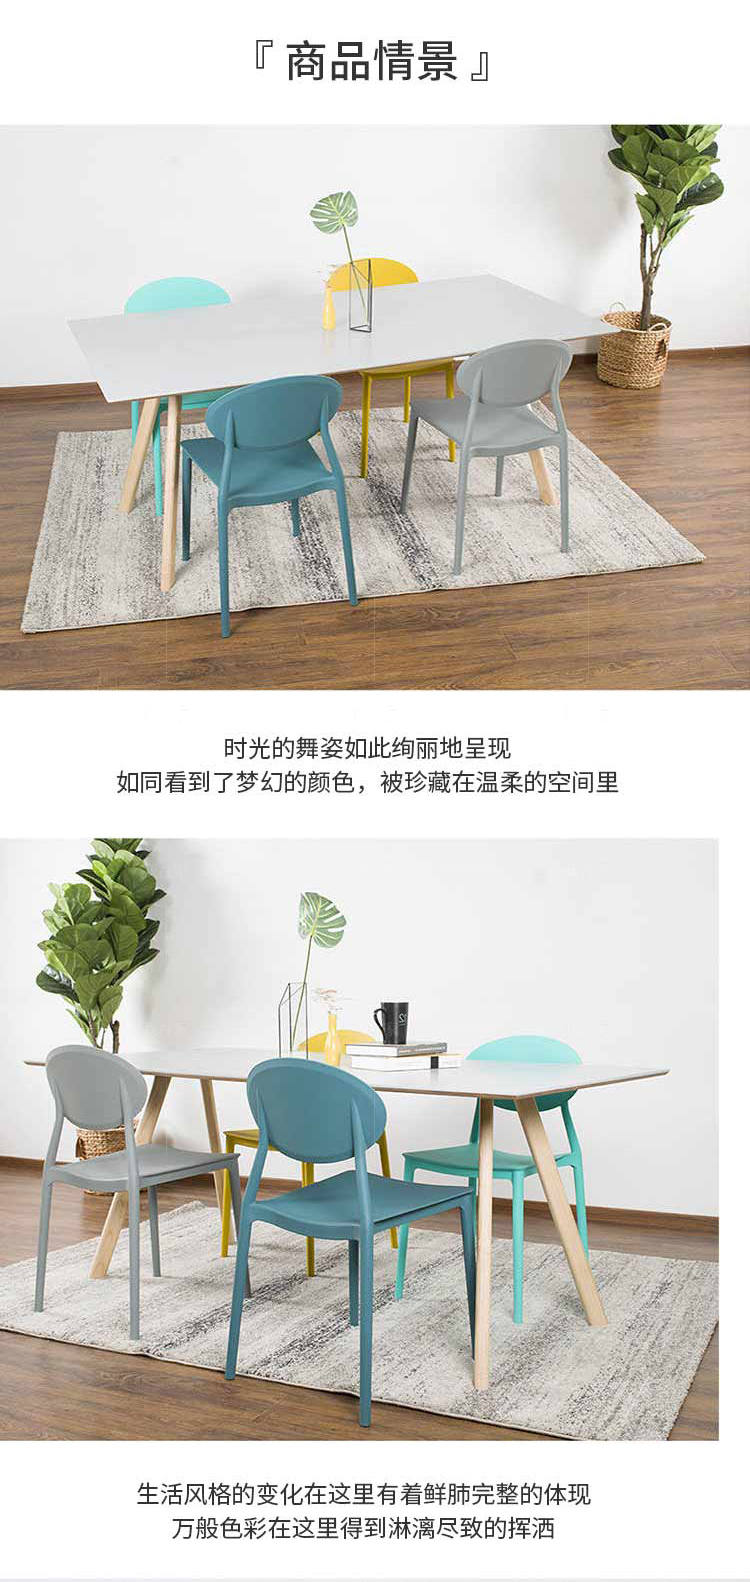 色彩北欧风格猫儿椅的家具详细介绍